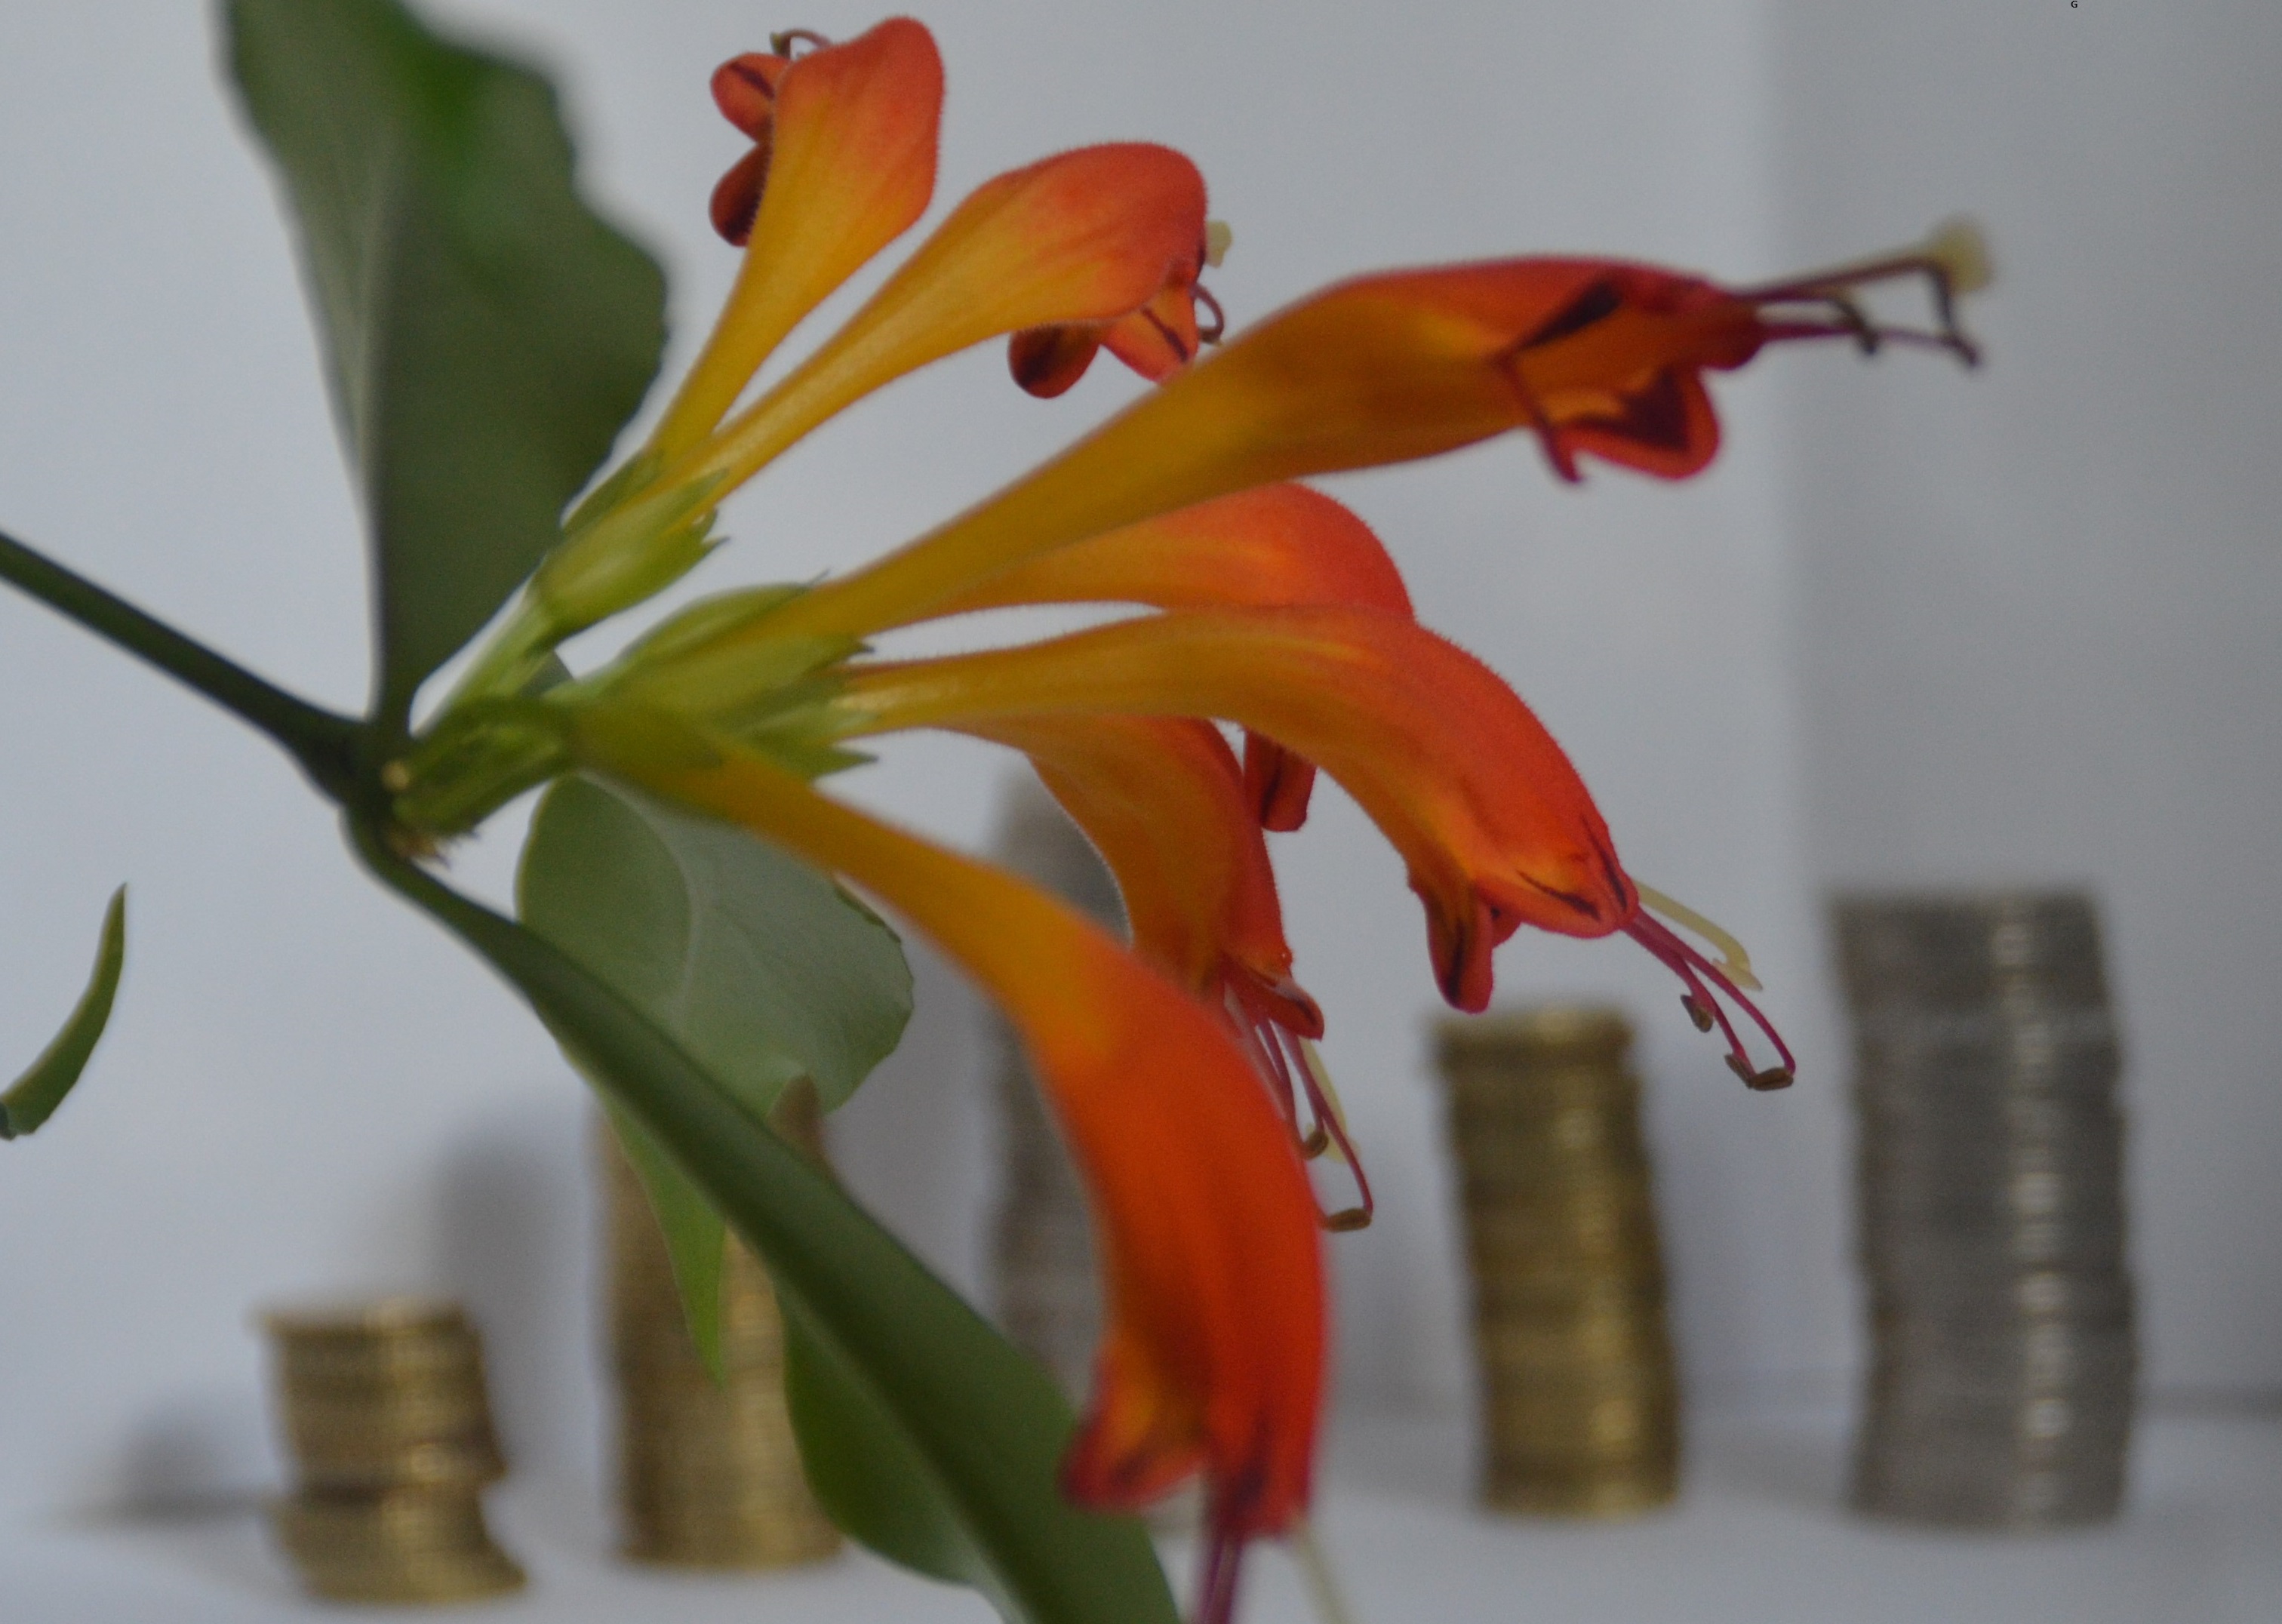 Blüte vor Münzen - symbolisiert Wachstum durch Förderung